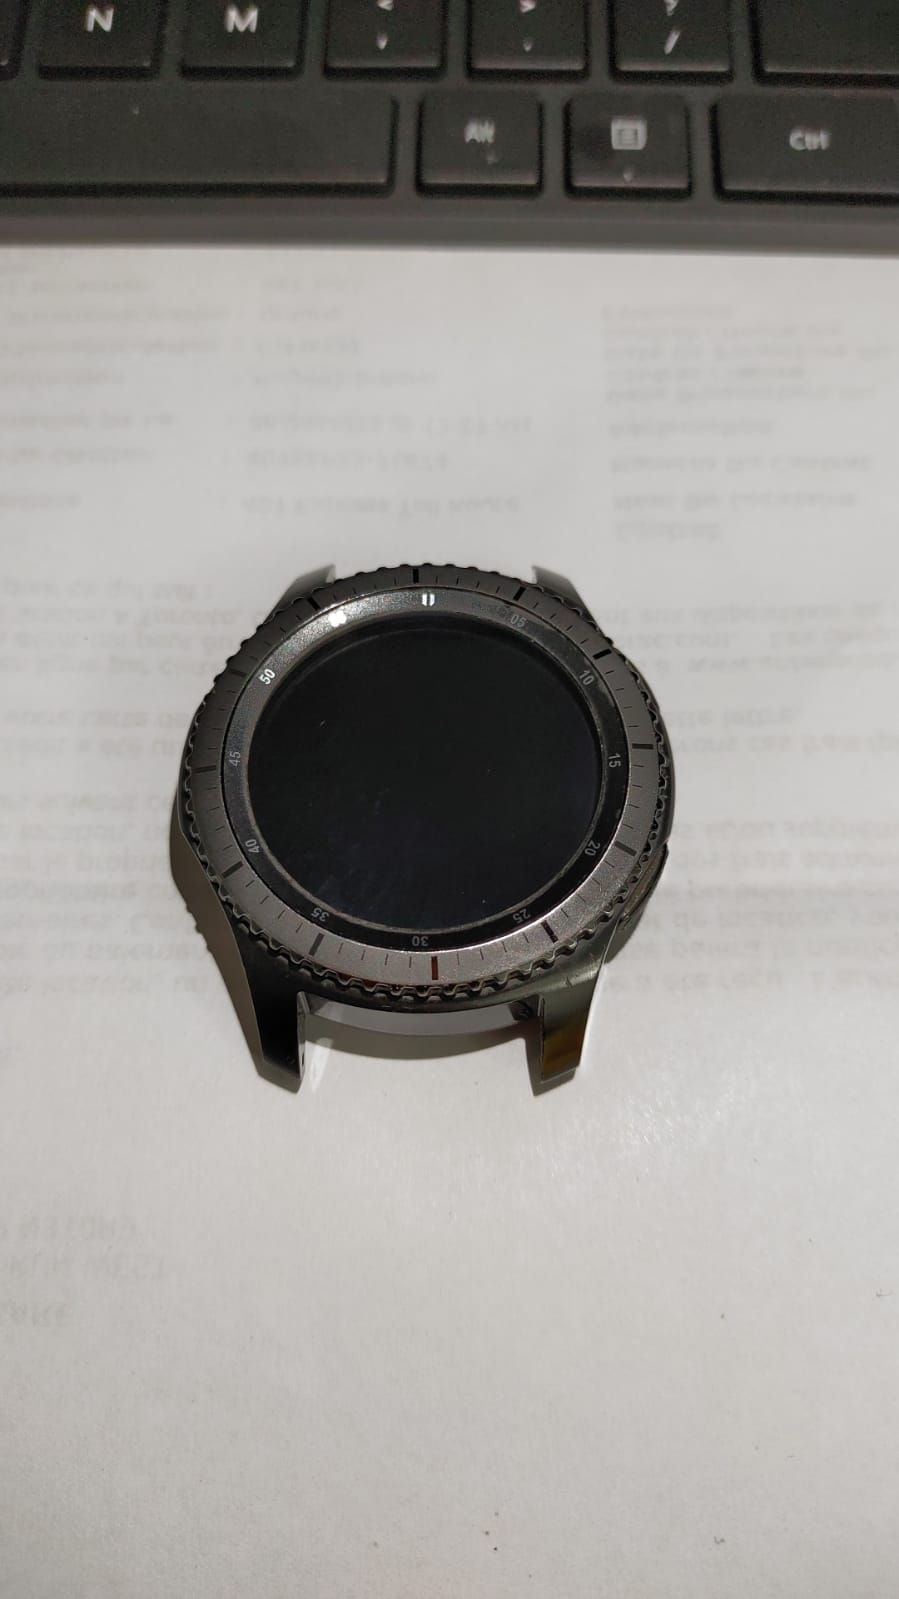 Samsung Gear S3 Frontier Smart Watch (SM-R760NDAAXAR) - Black